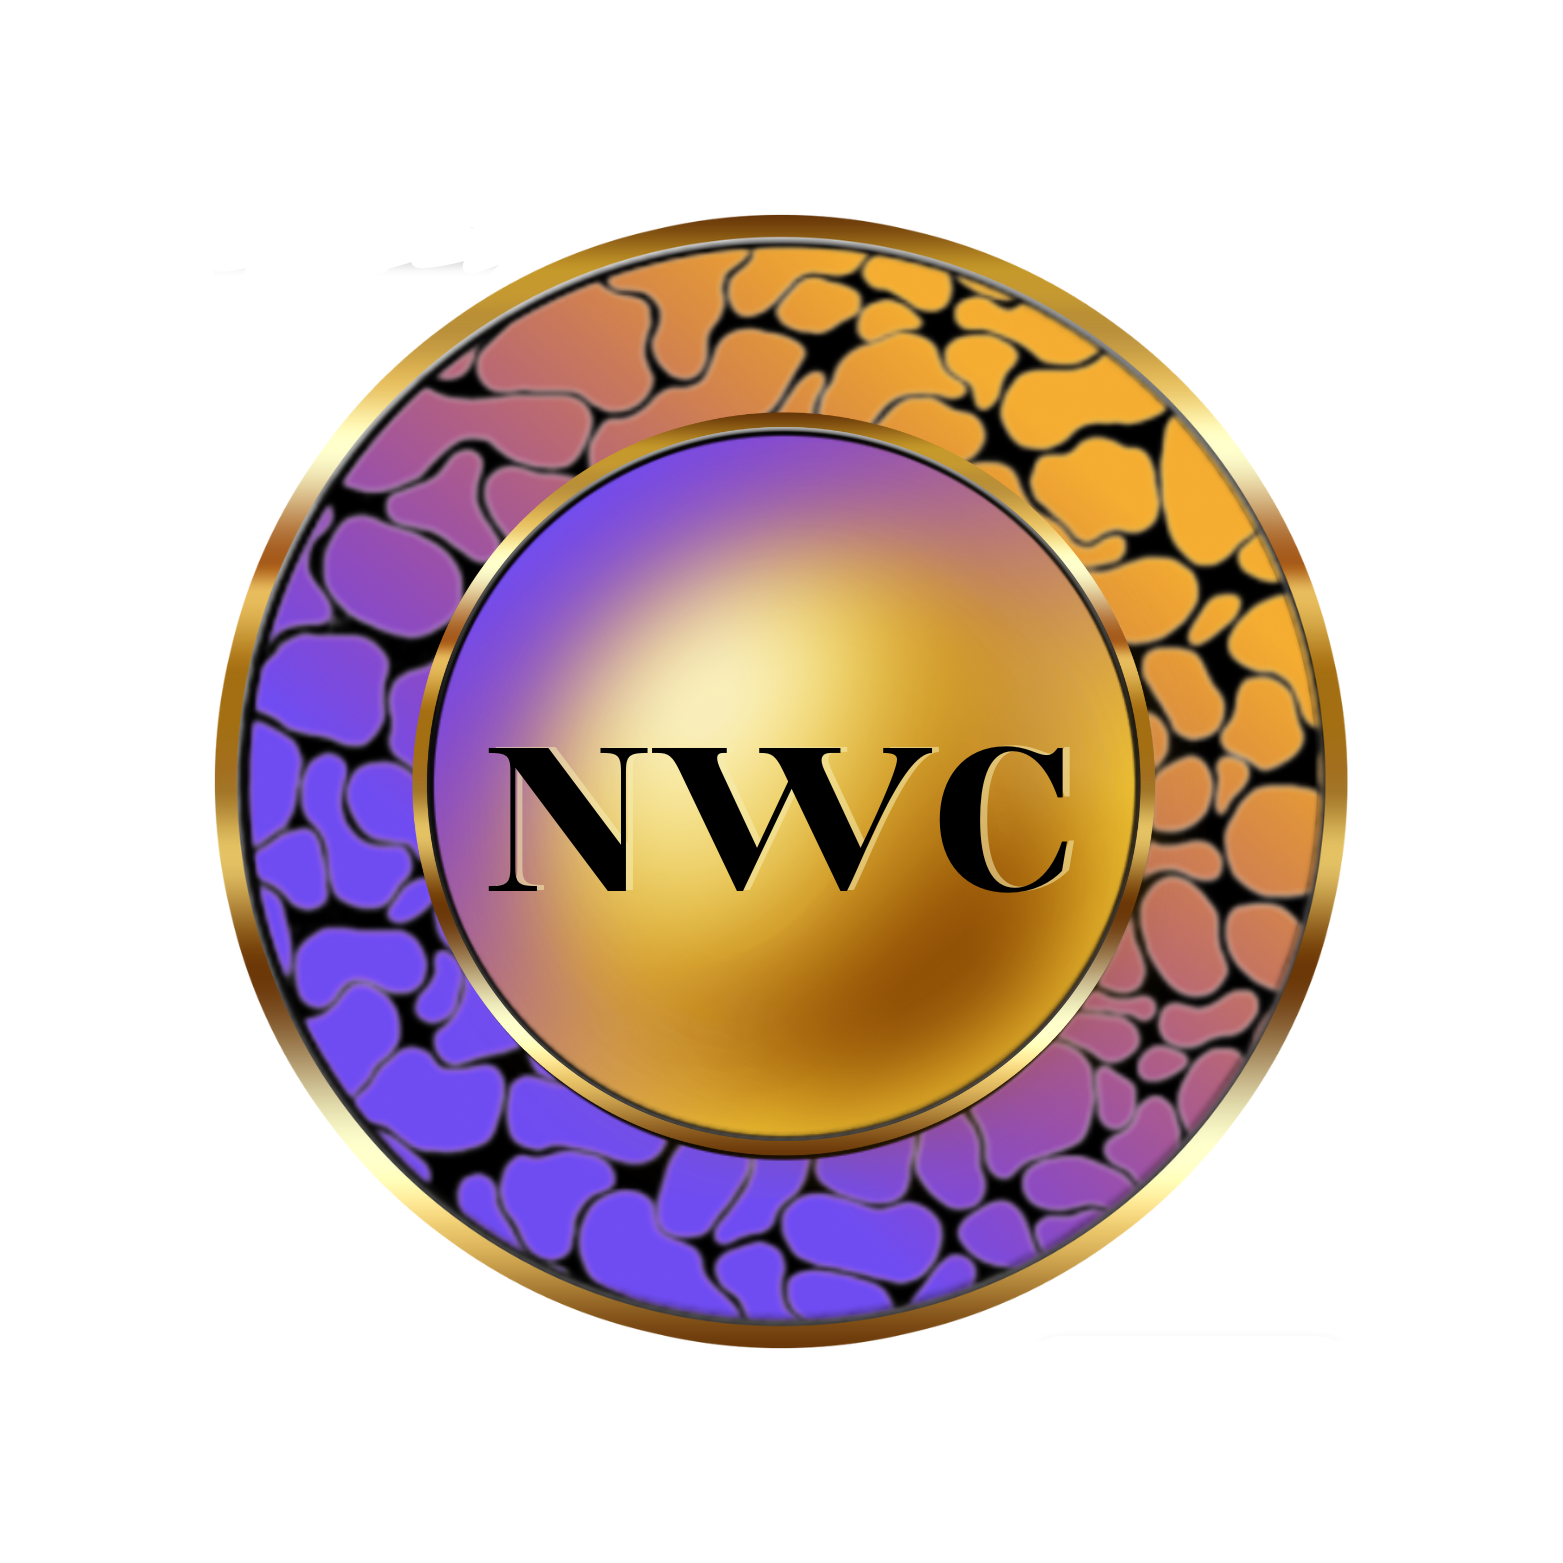 NWC